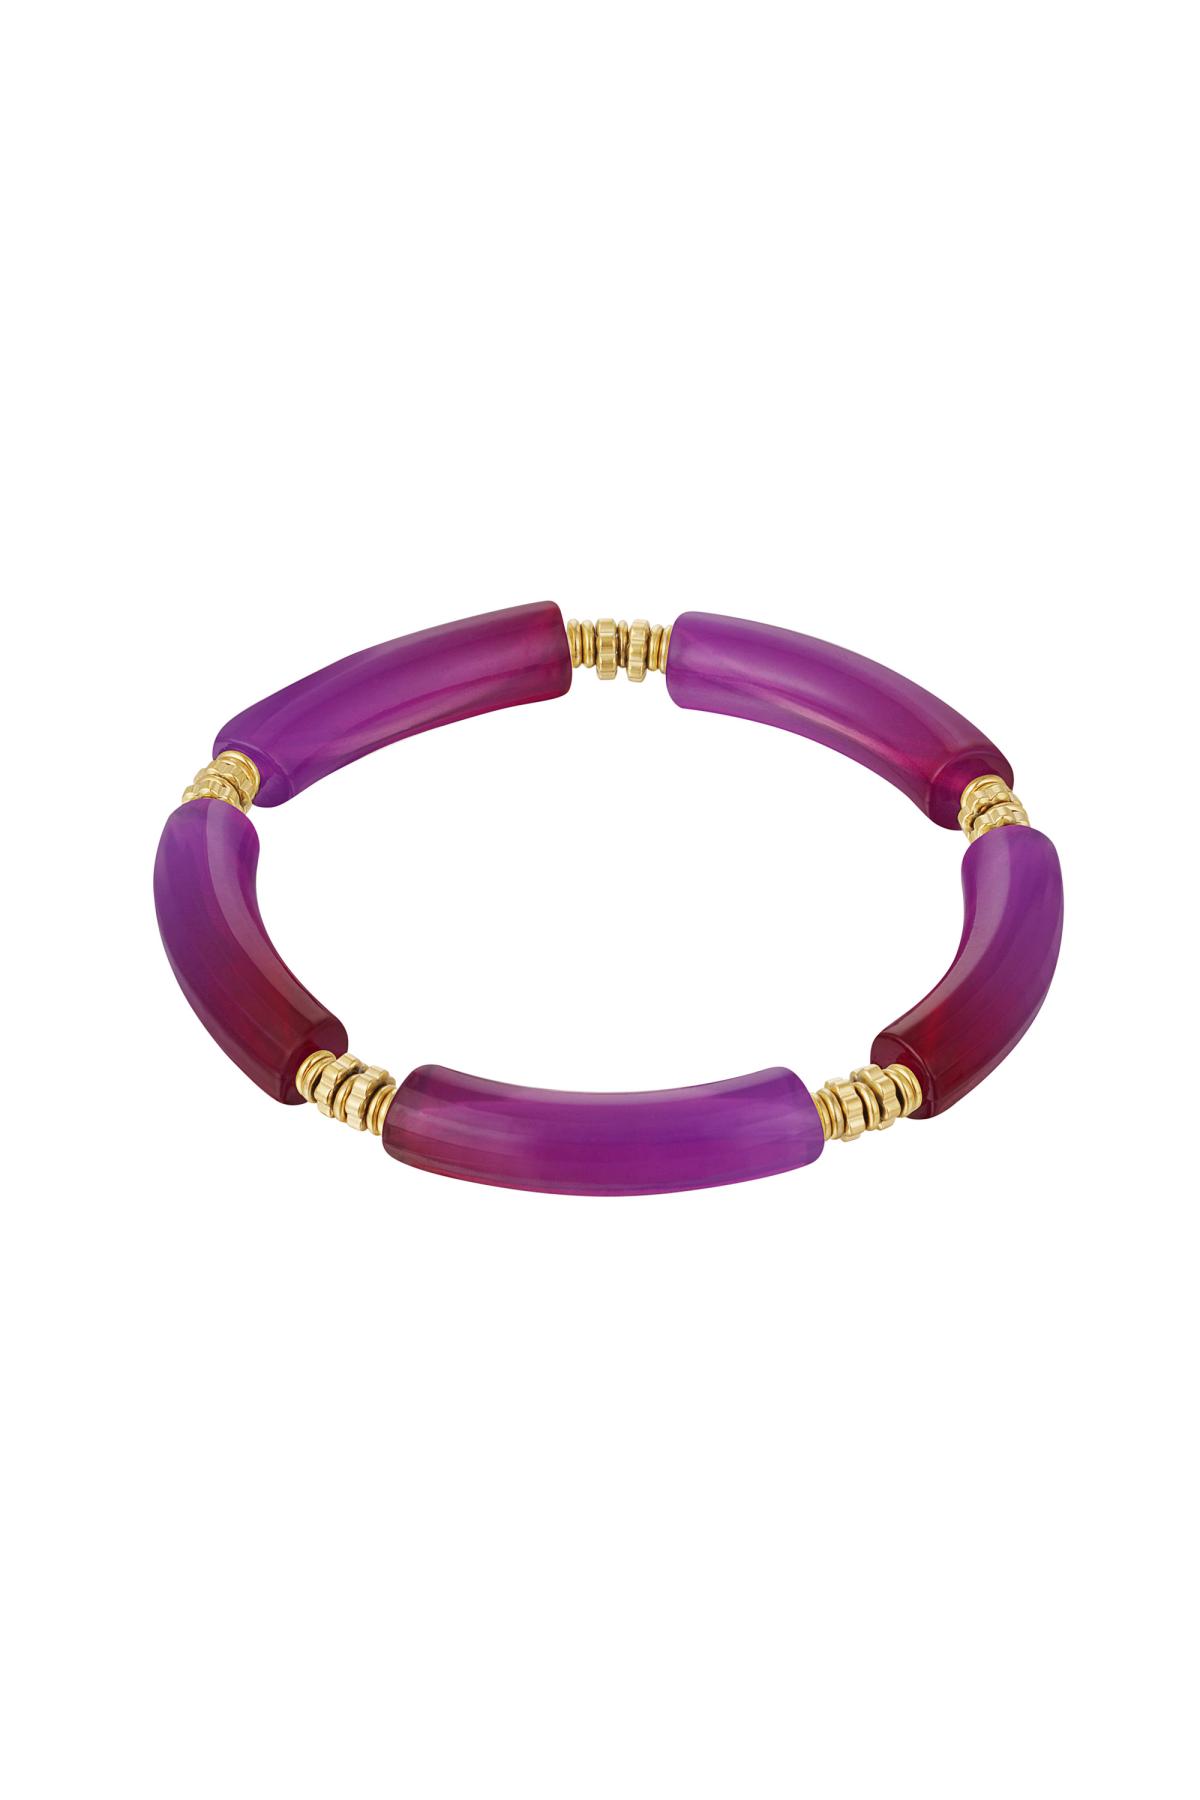 Détail perle du bracelet tube Violet Acrylique